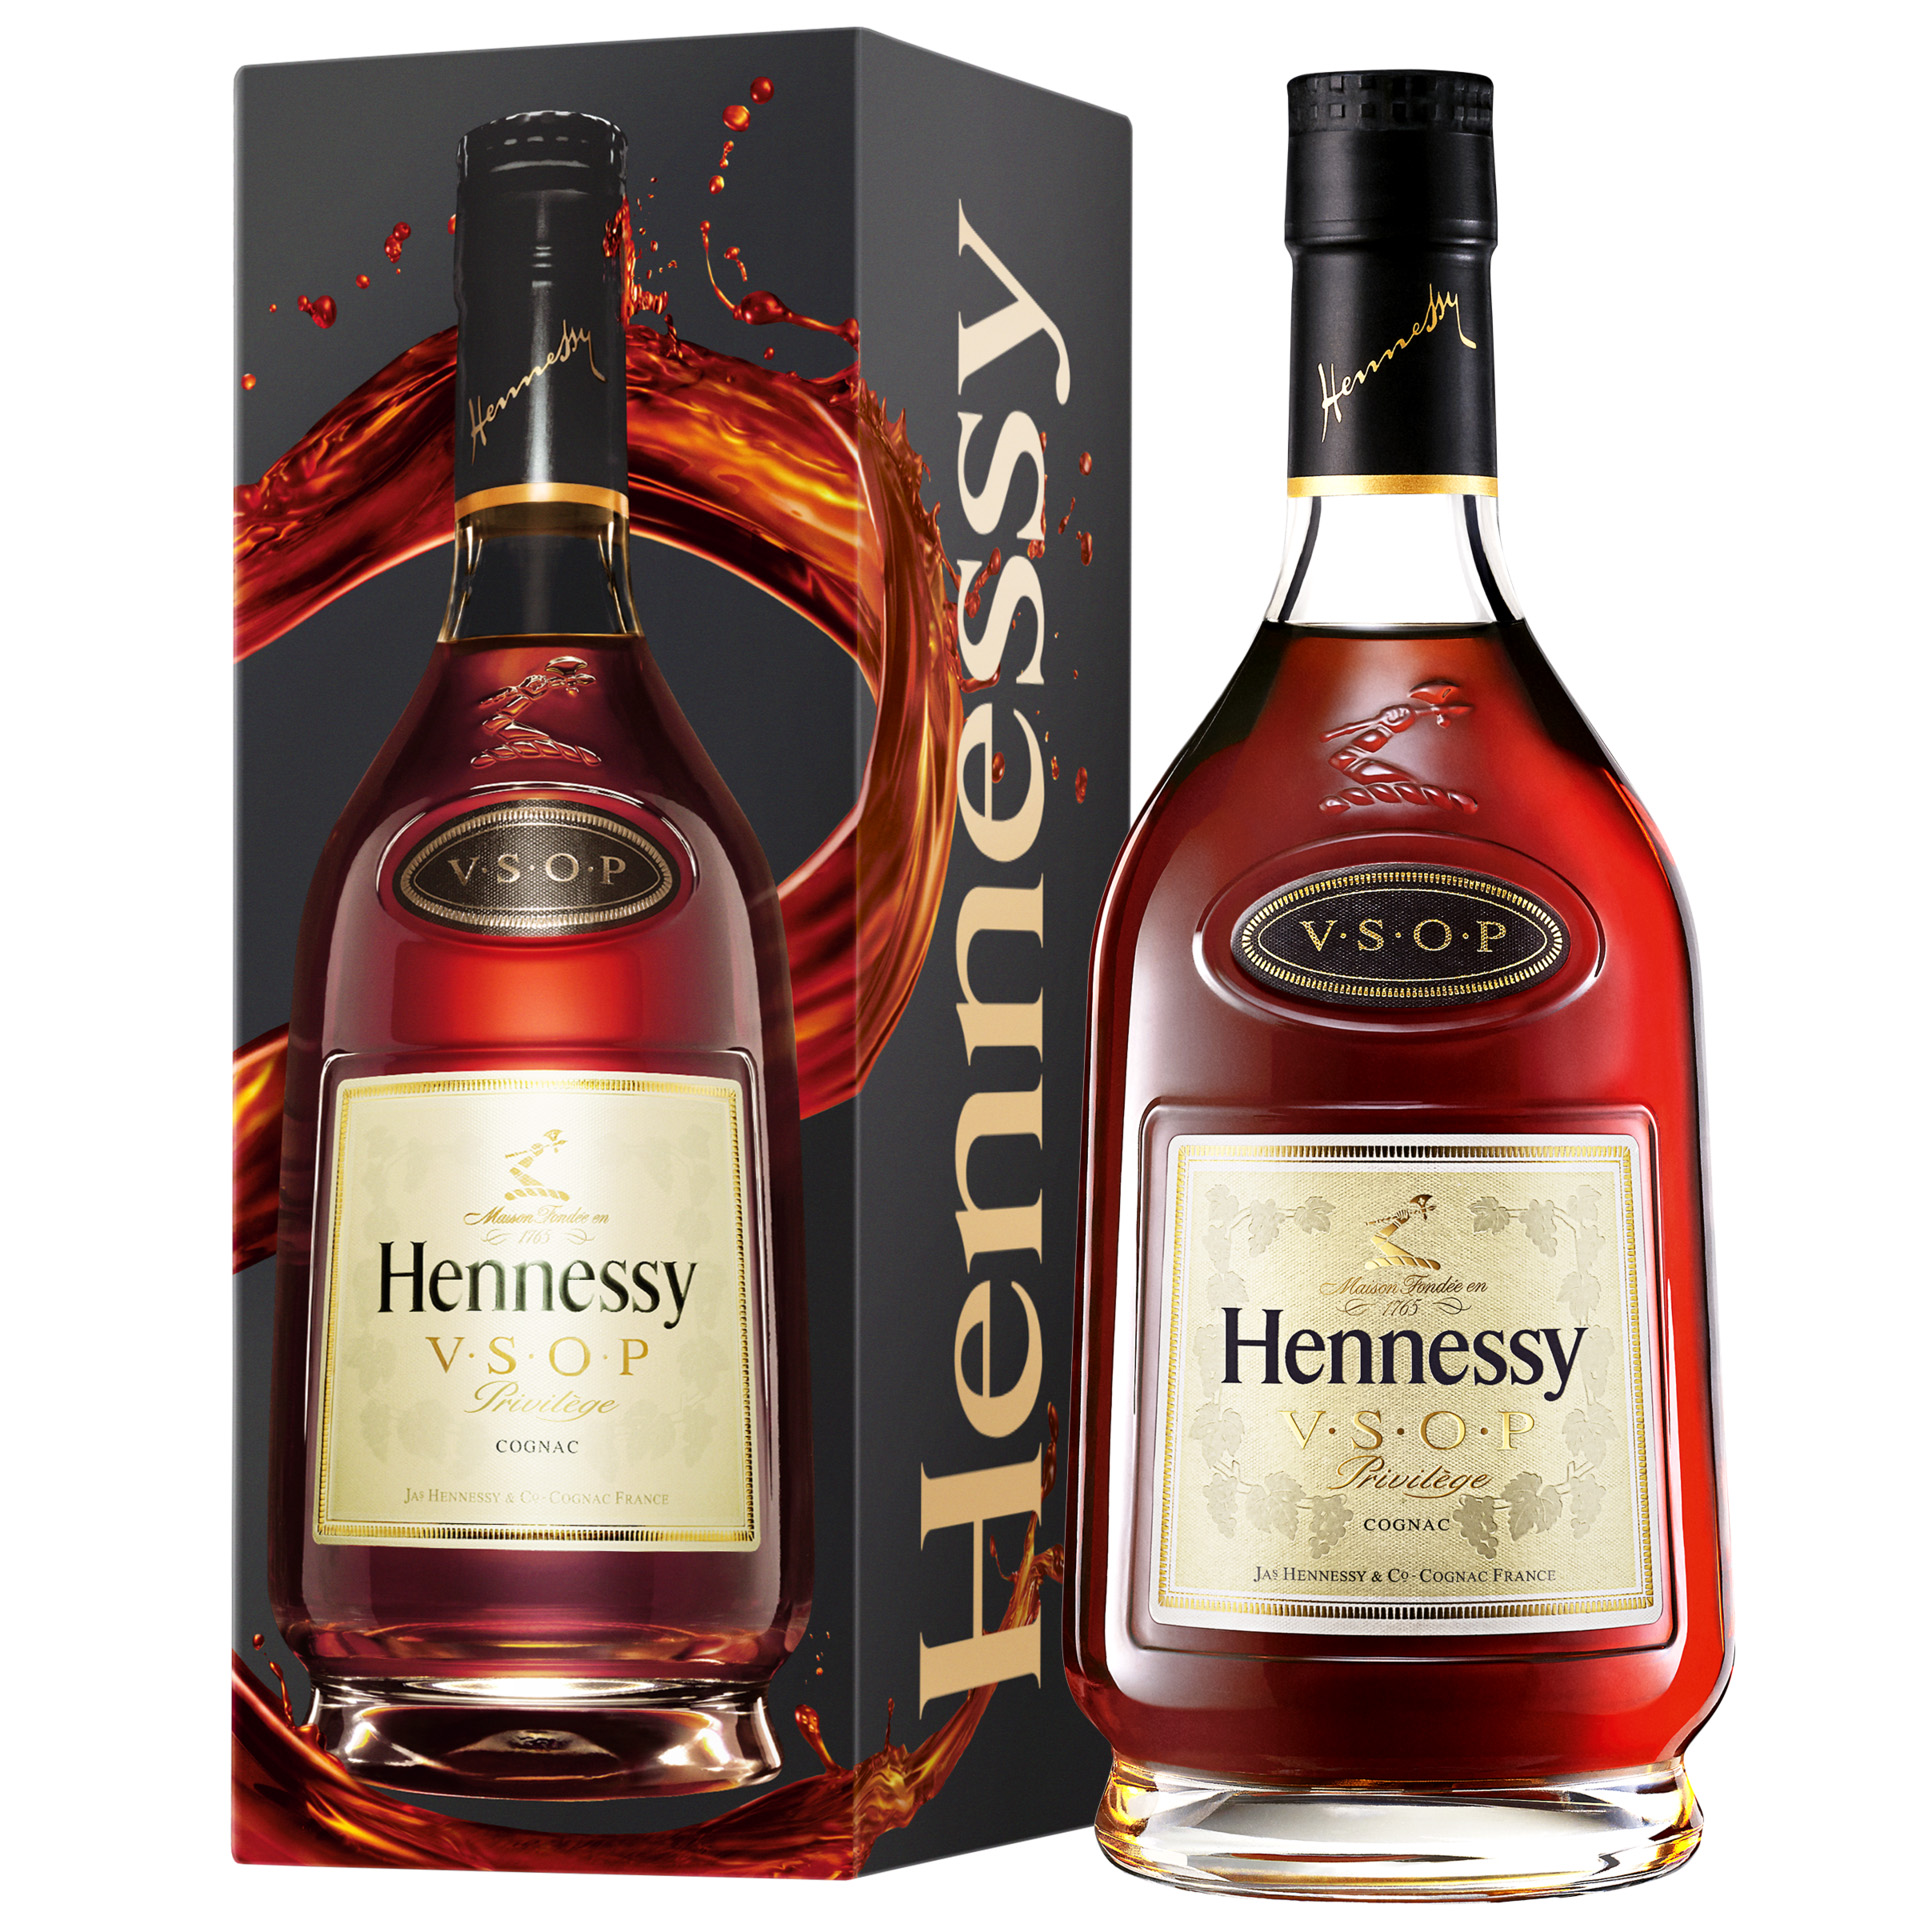 Hennessy VSOP, el cognac con más de 200 años de historia